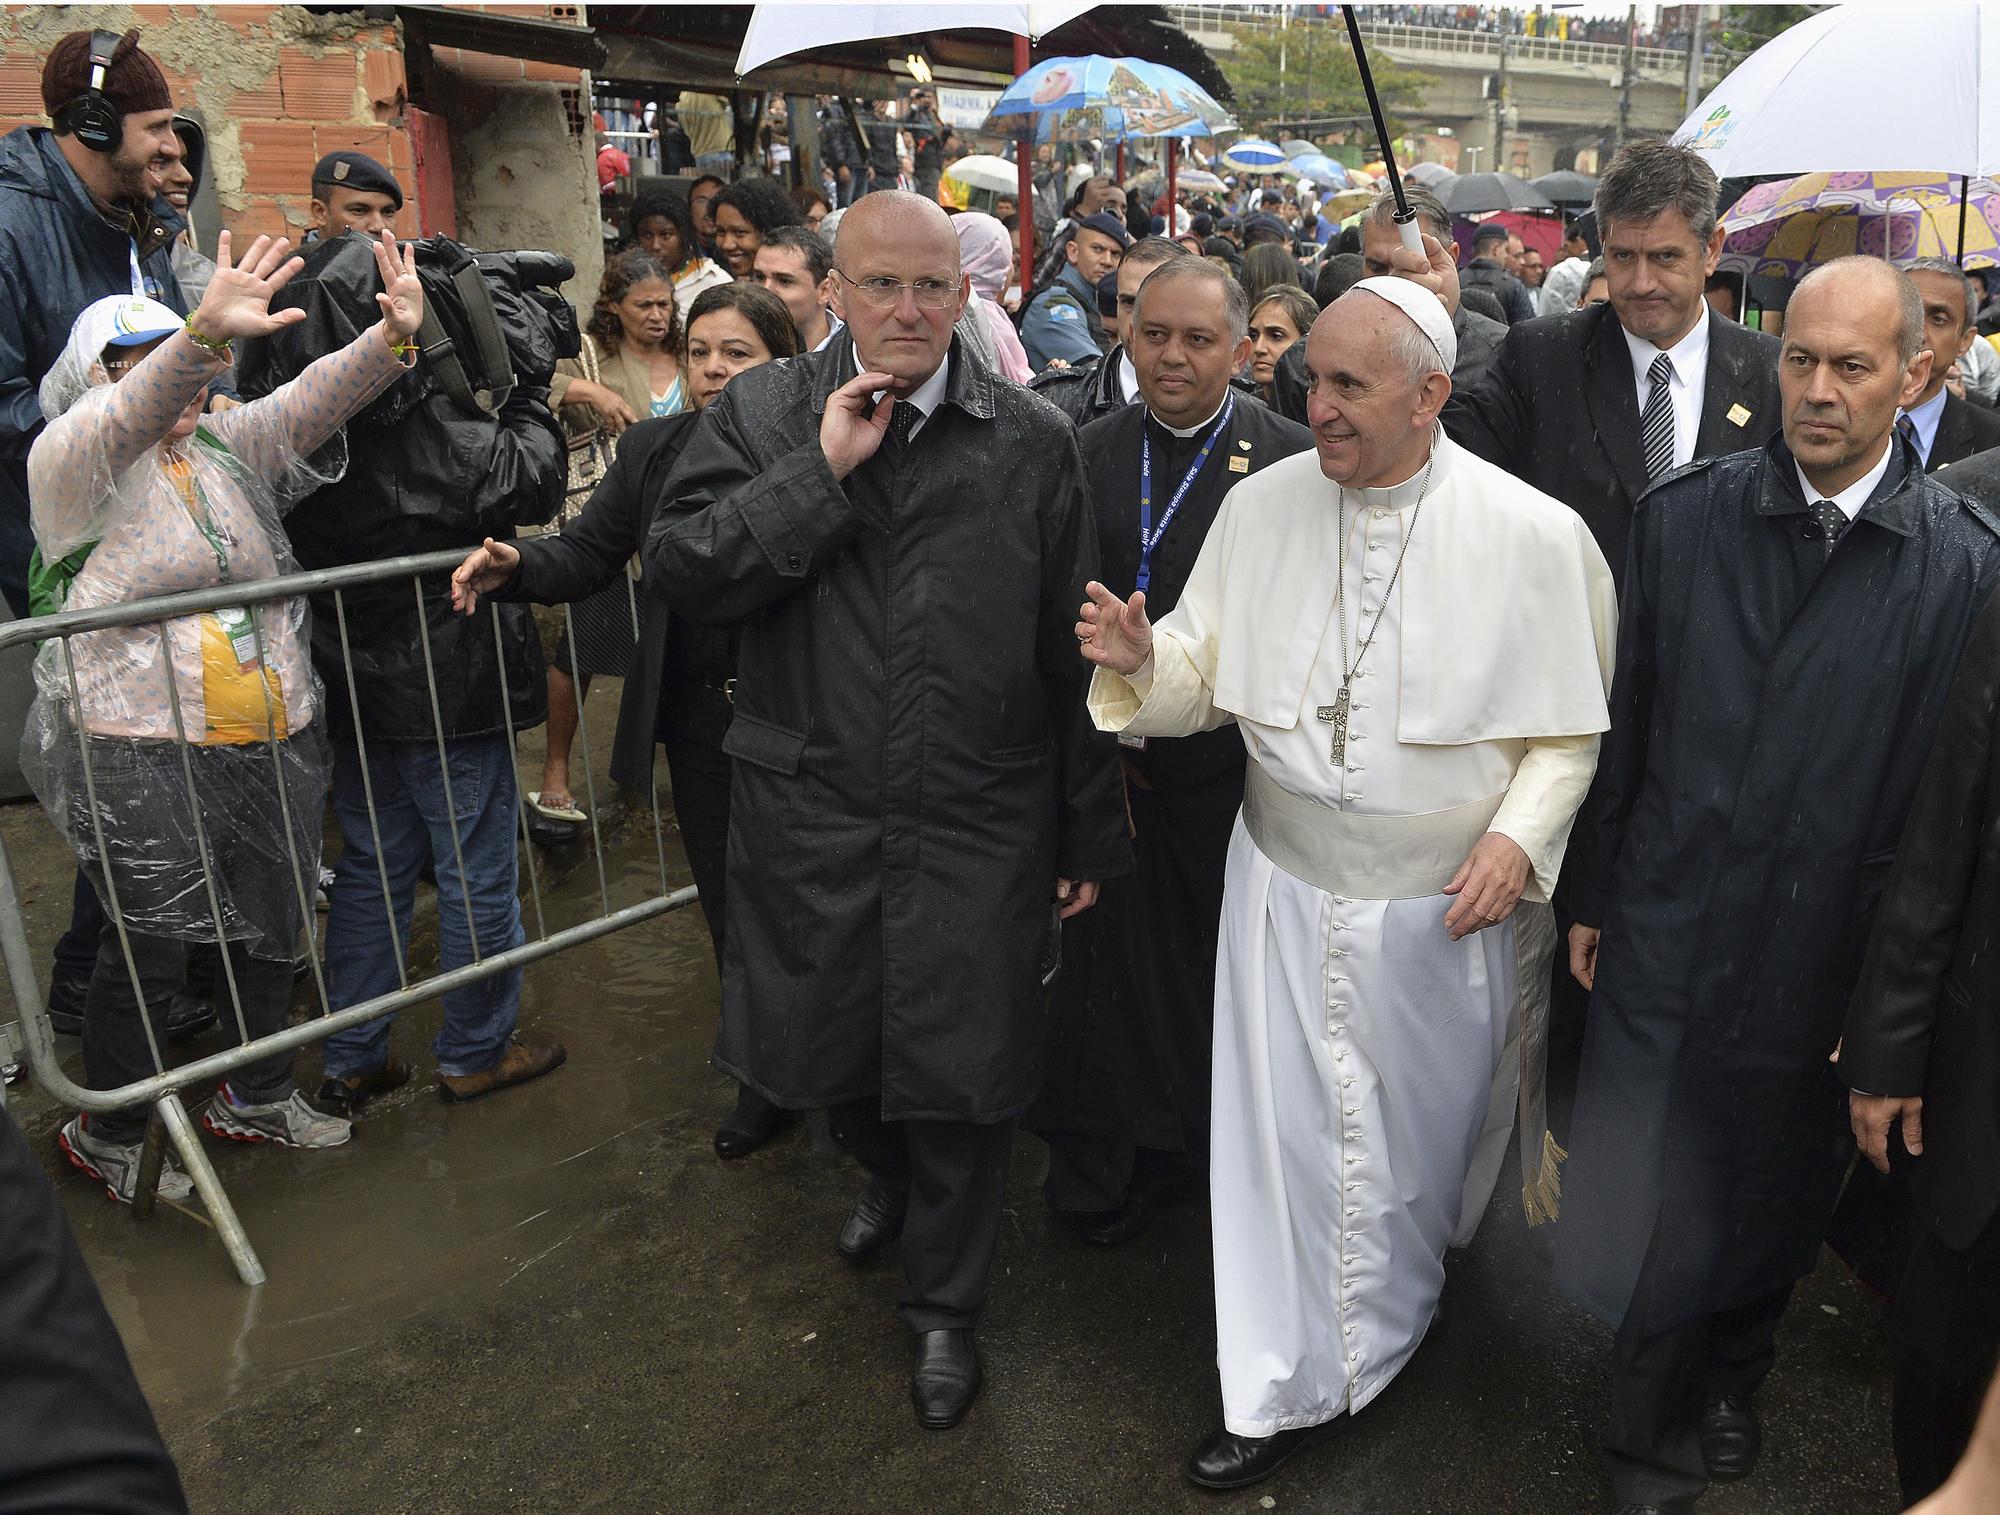 Le pape François a visité la favela de Varginha sous une pluie diluvienne. [REUTERS - Luca Zennaro]